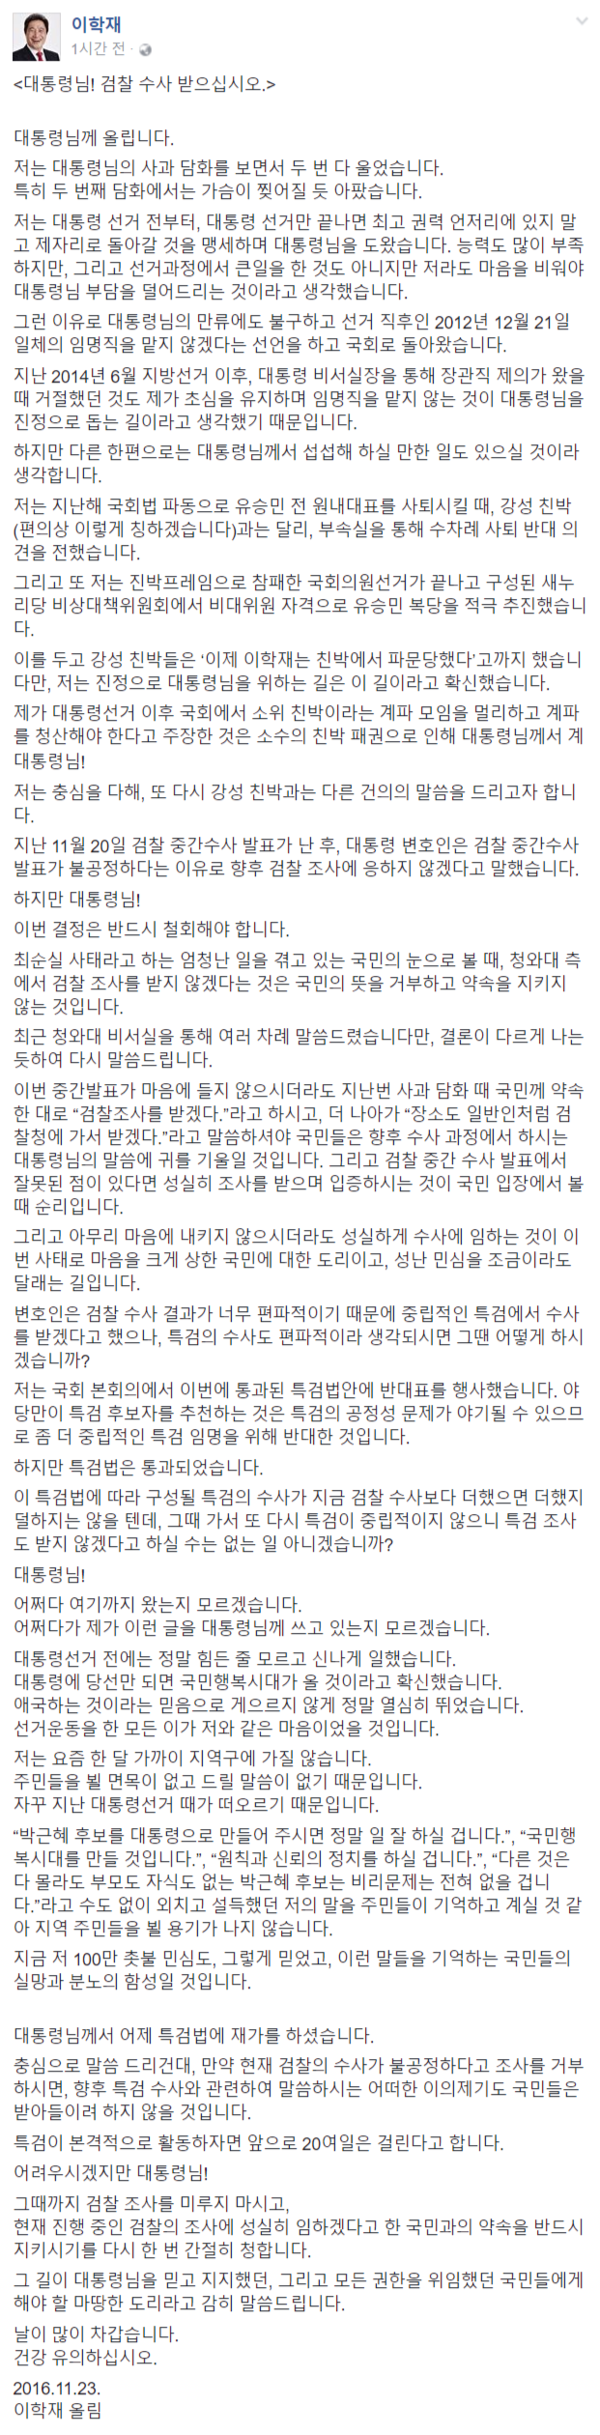 ▲ 새누리당 이학재 의원이 23일 페이스북에 장문의 글을 올렸다. 해당 글에서는 박 대통령이 검찰 수사에 협조하기를 요청하는 내용이 주를 이룬다. ⓒ이학재 의원 페이스북 화면 캡처